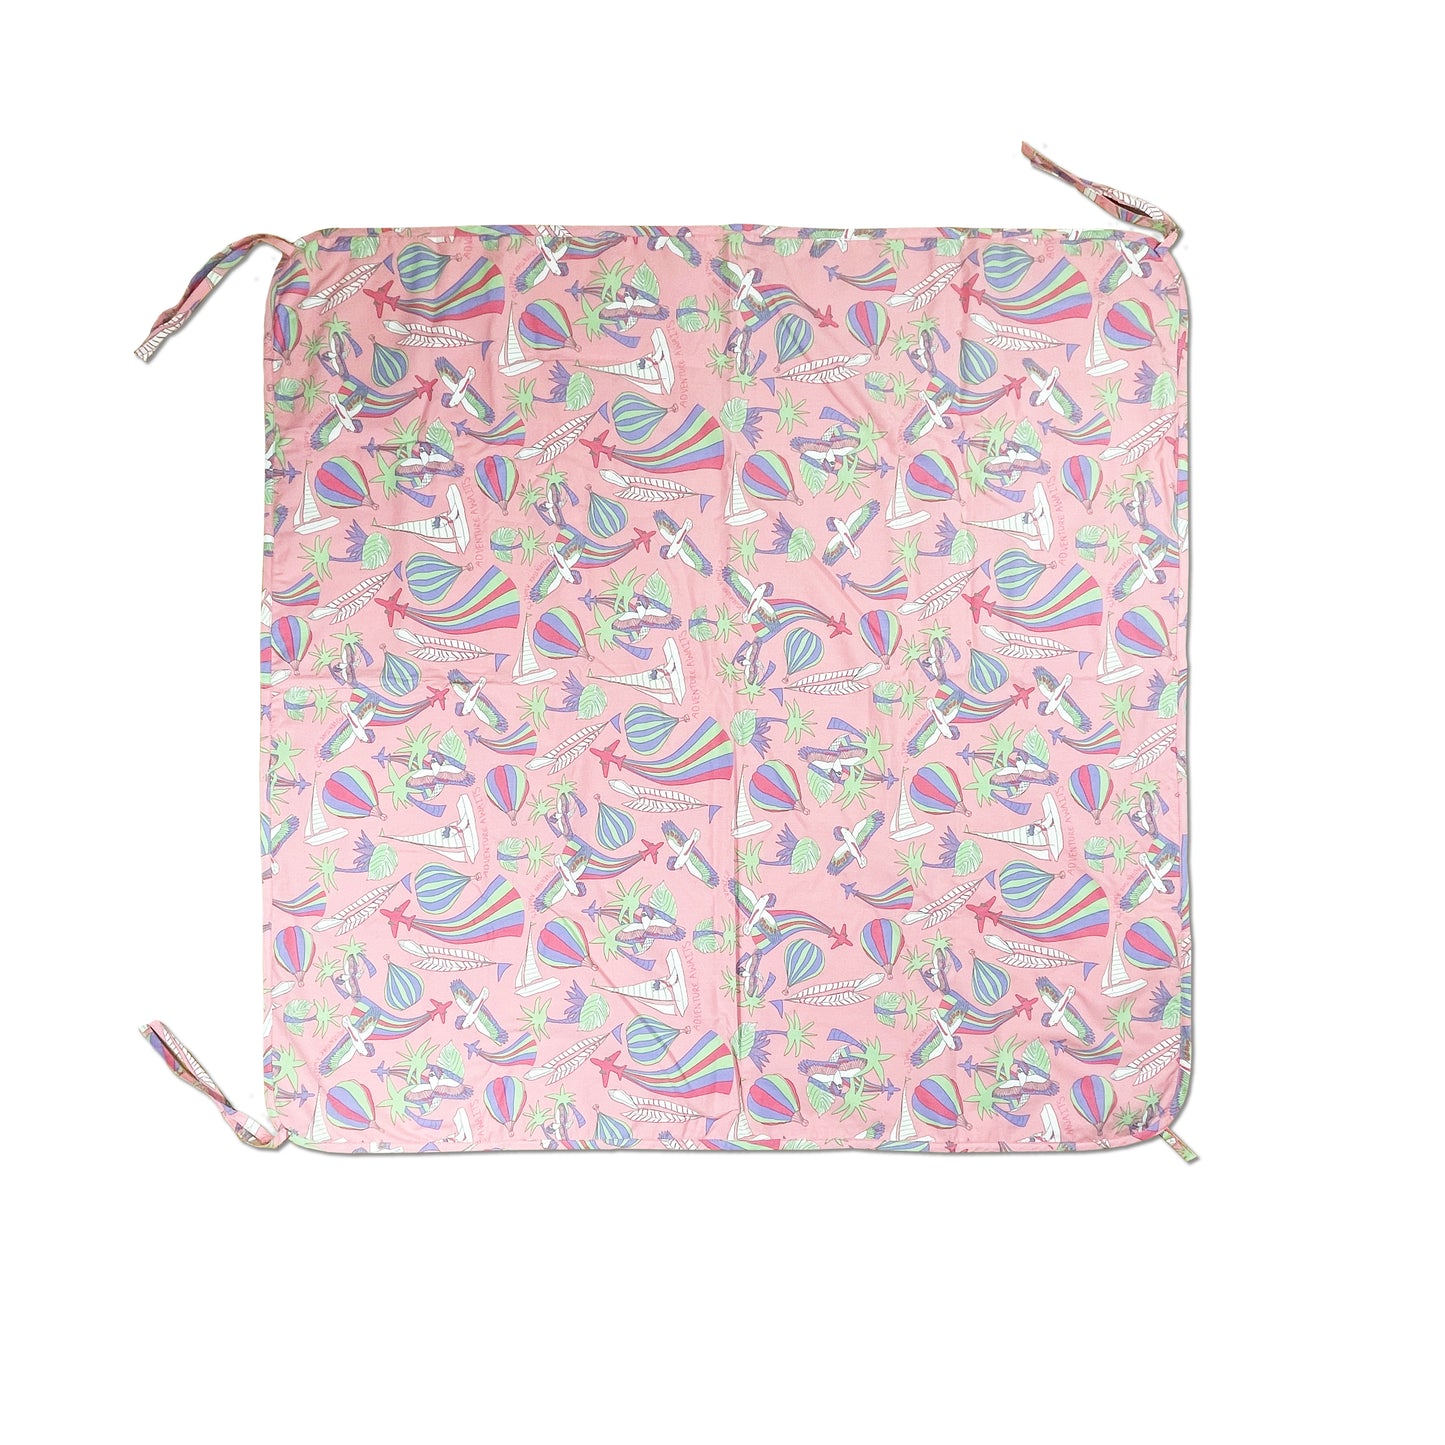 童裝有機棉配飾 - 粉紅鸚鵡印花BB包被